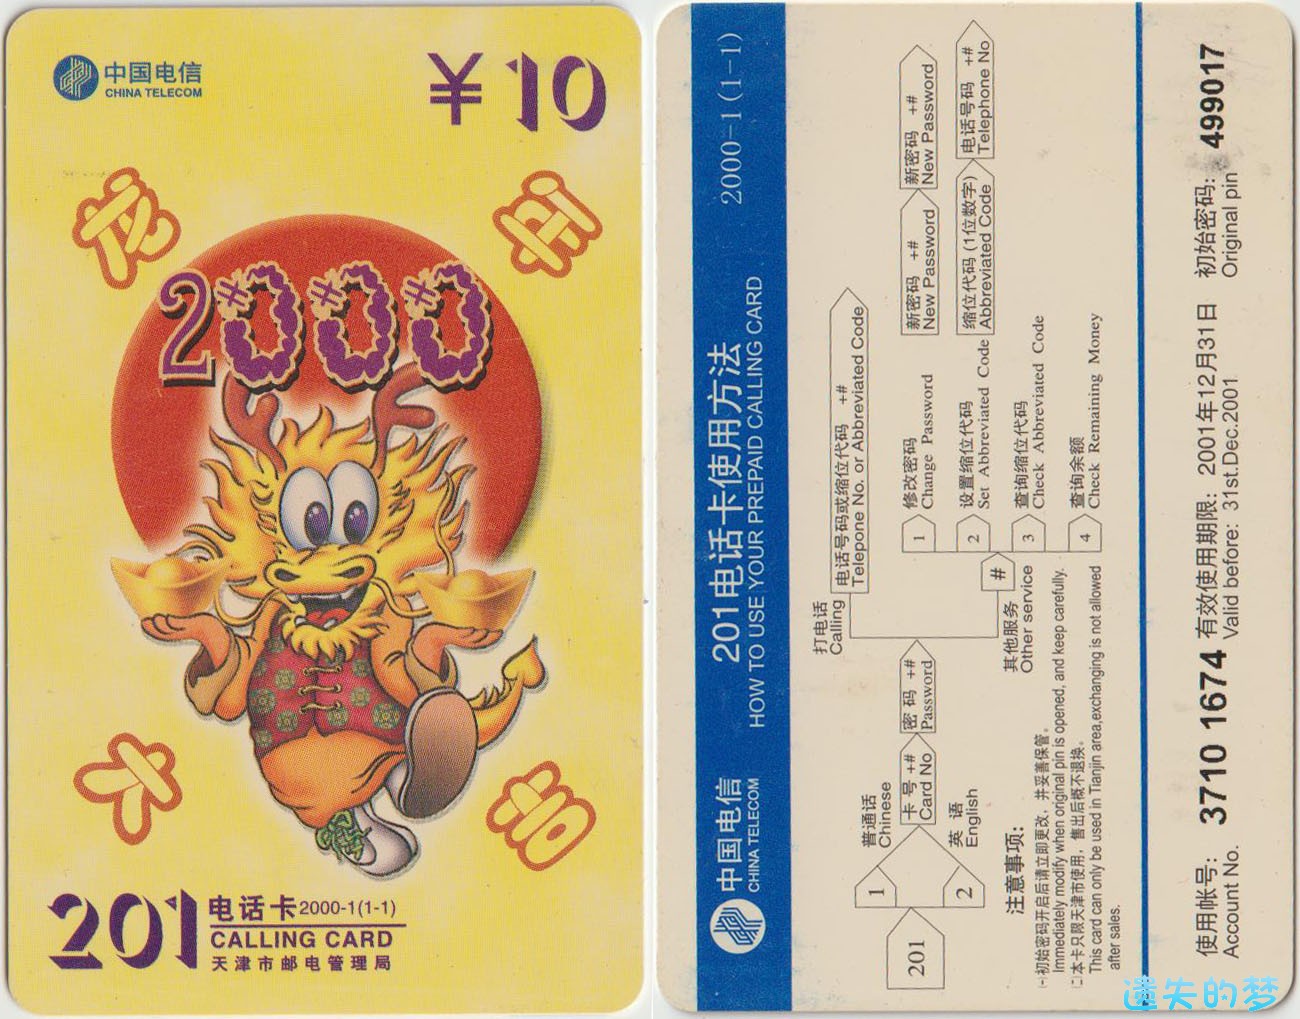 201电话卡2000-1(1-1).jpg